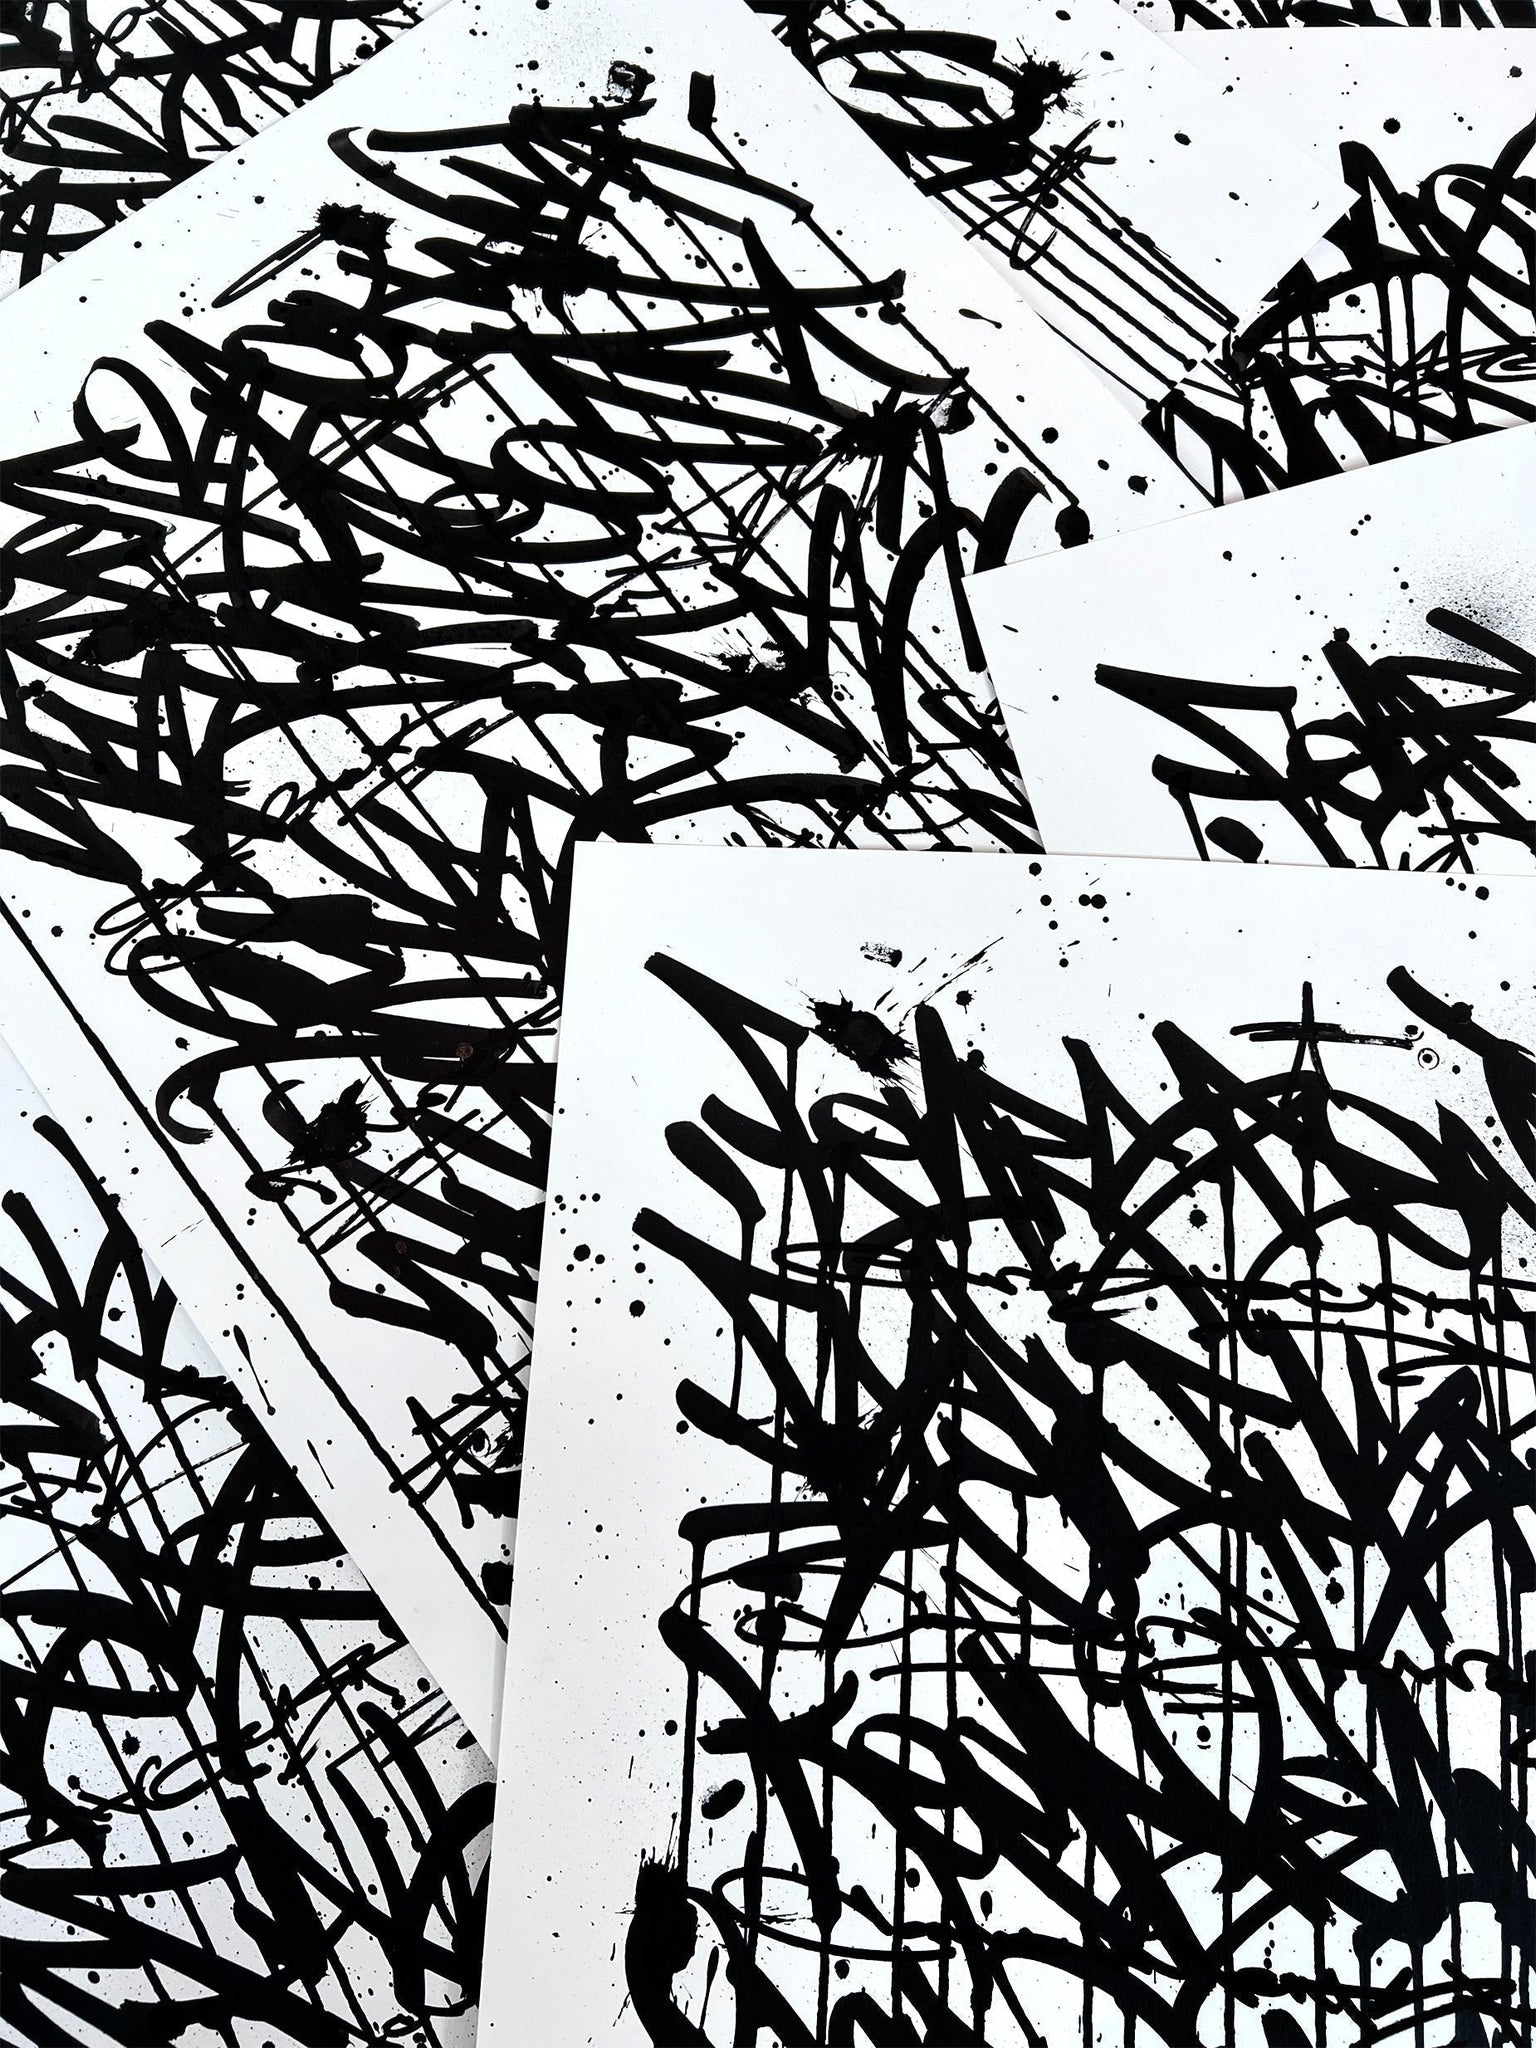 Fear Less Live More 07 - original on paper 50 x 70 cm